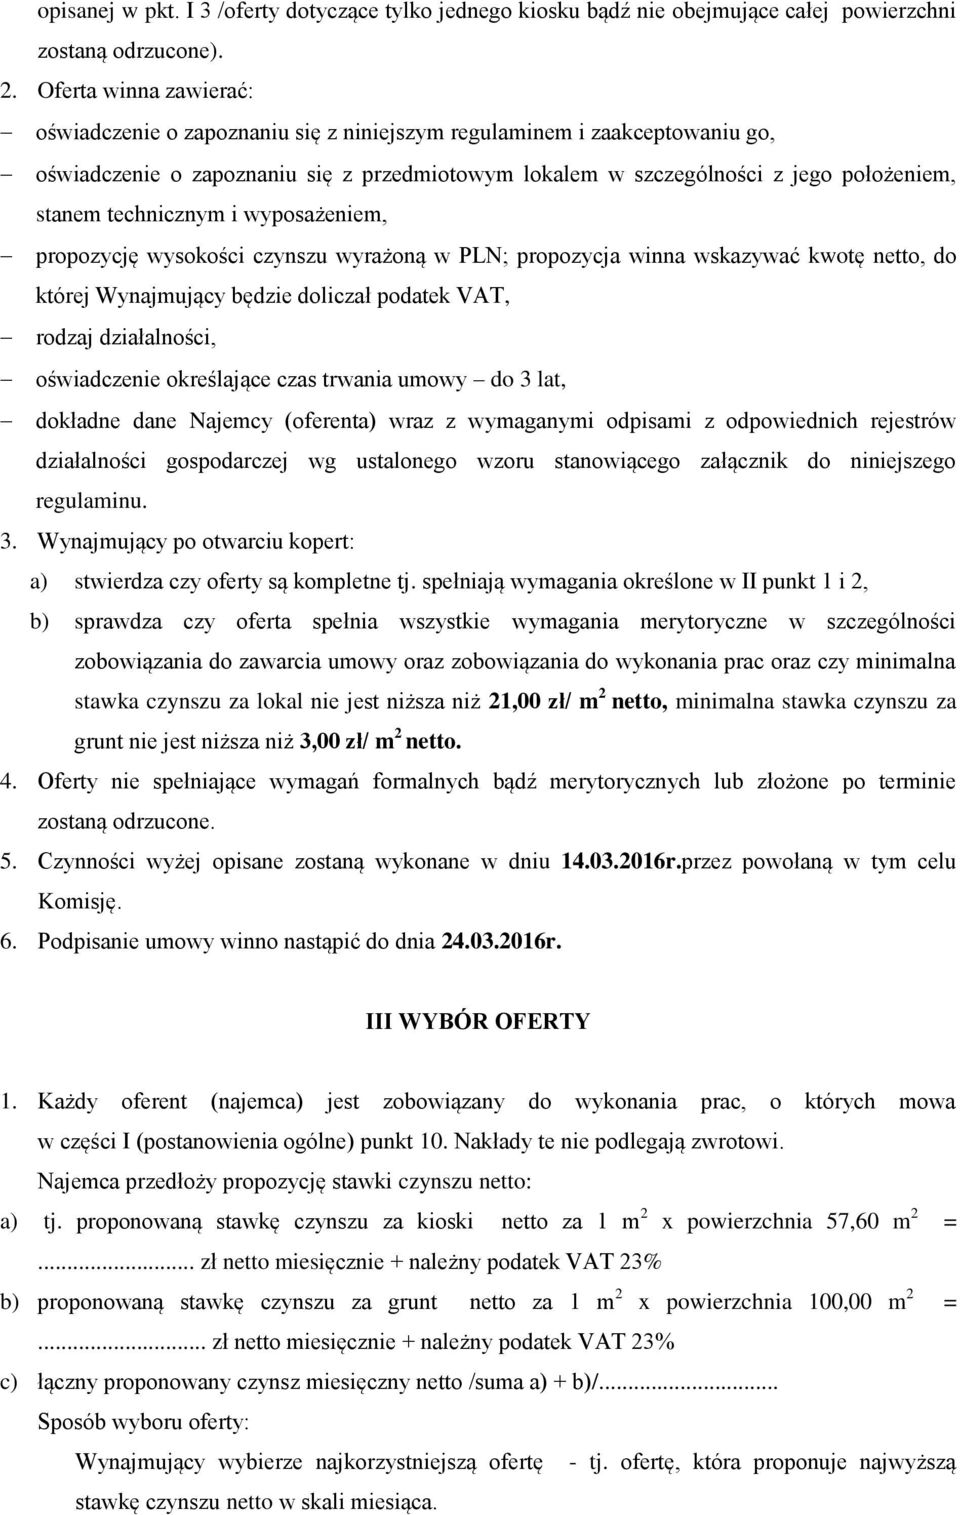 technicznym i wyposażeniem, propozycję wysokości czynszu wyrażoną w PLN; propozycja winna wskazywać kwotę netto, do której Wynajmujący będzie doliczał podatek VAT, rodzaj działalności, oświadczenie